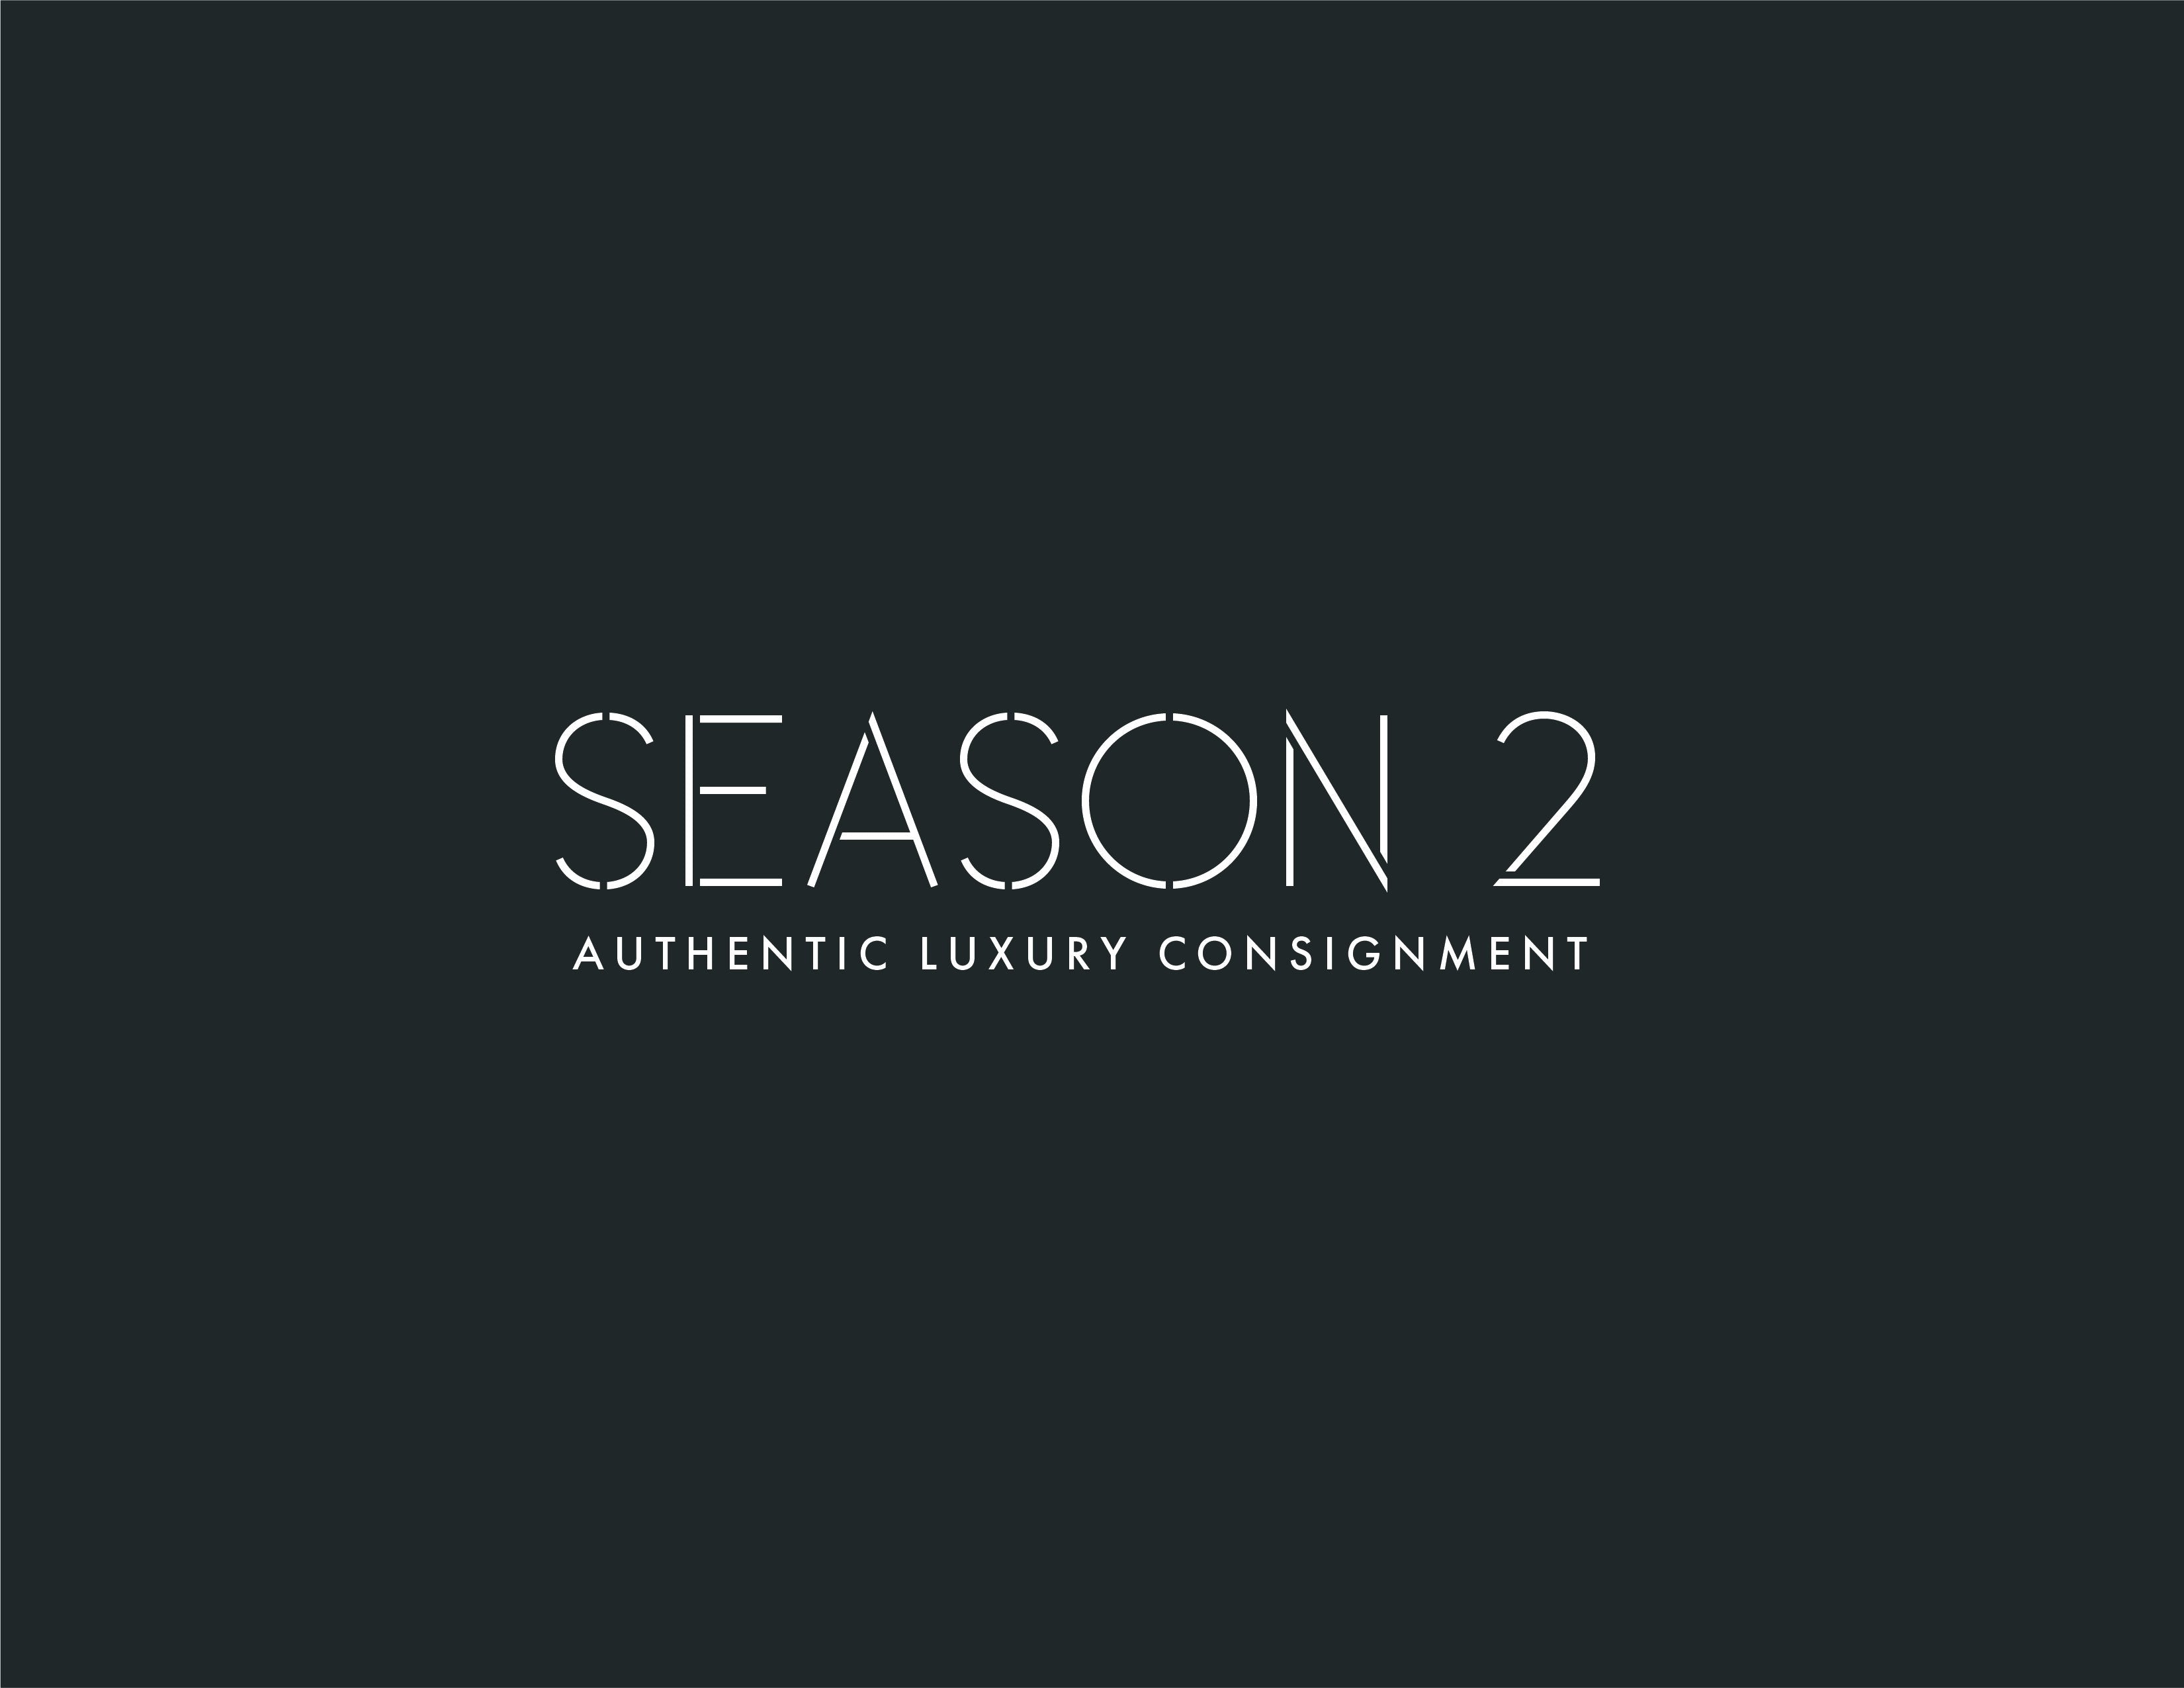 Season 2 Consign